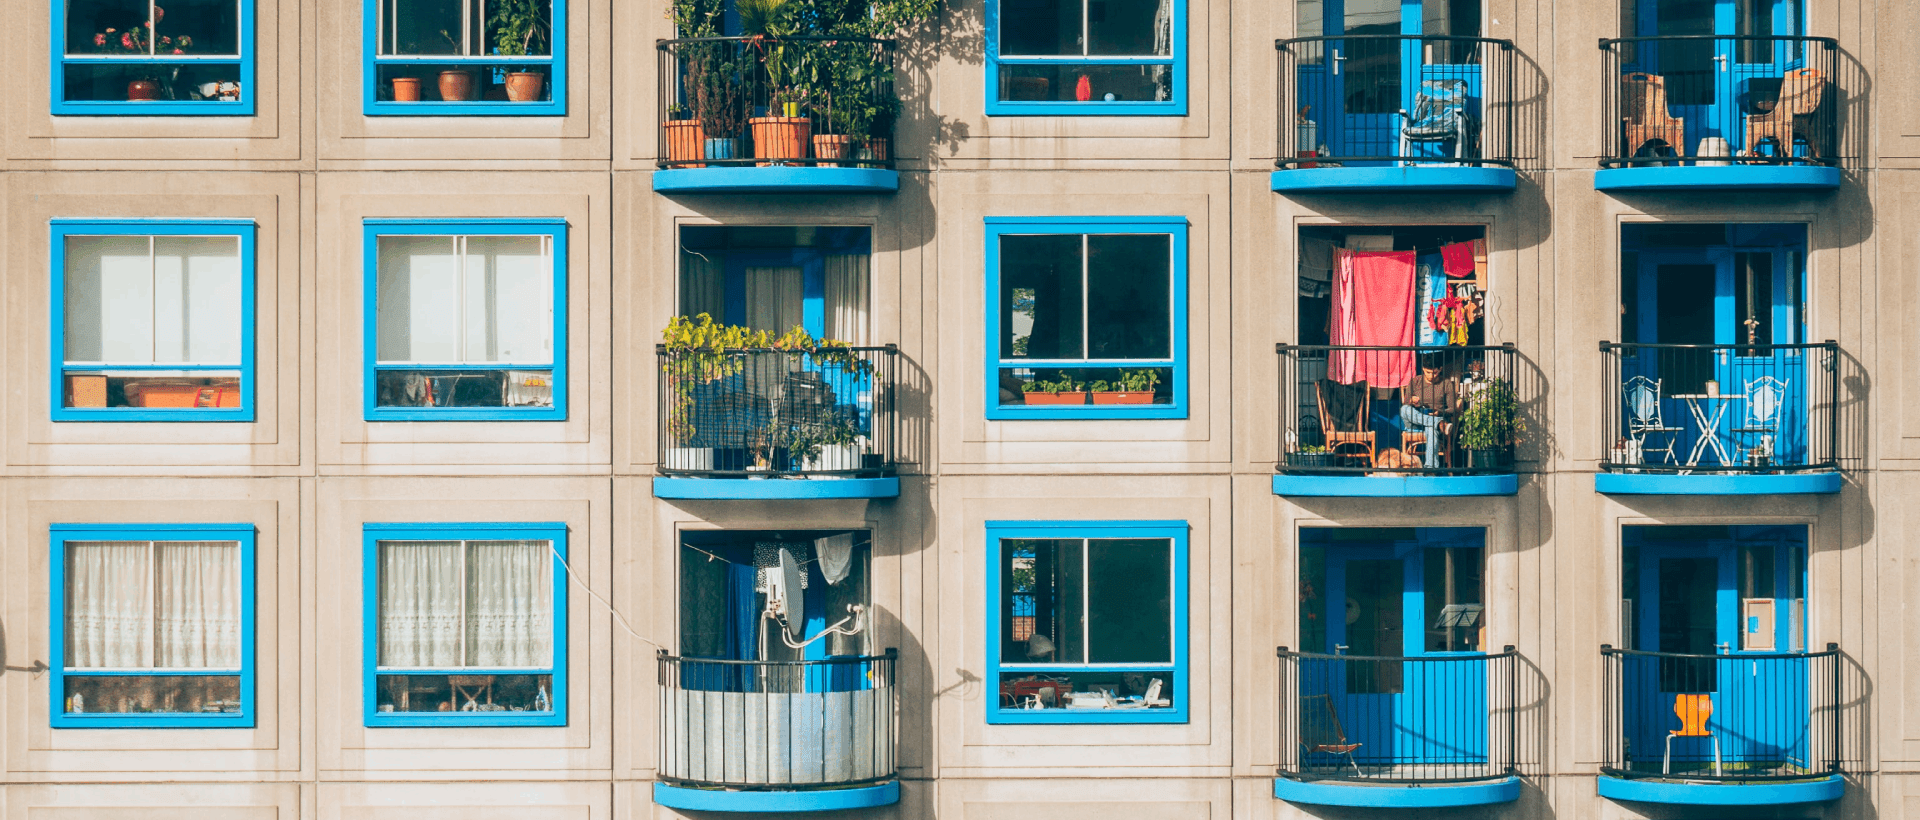 Hausfassade mit Balkonen sinnbildlich für modularen Aufbau und wiederverwendbare Blöcke in WordPress mit Gutenberg